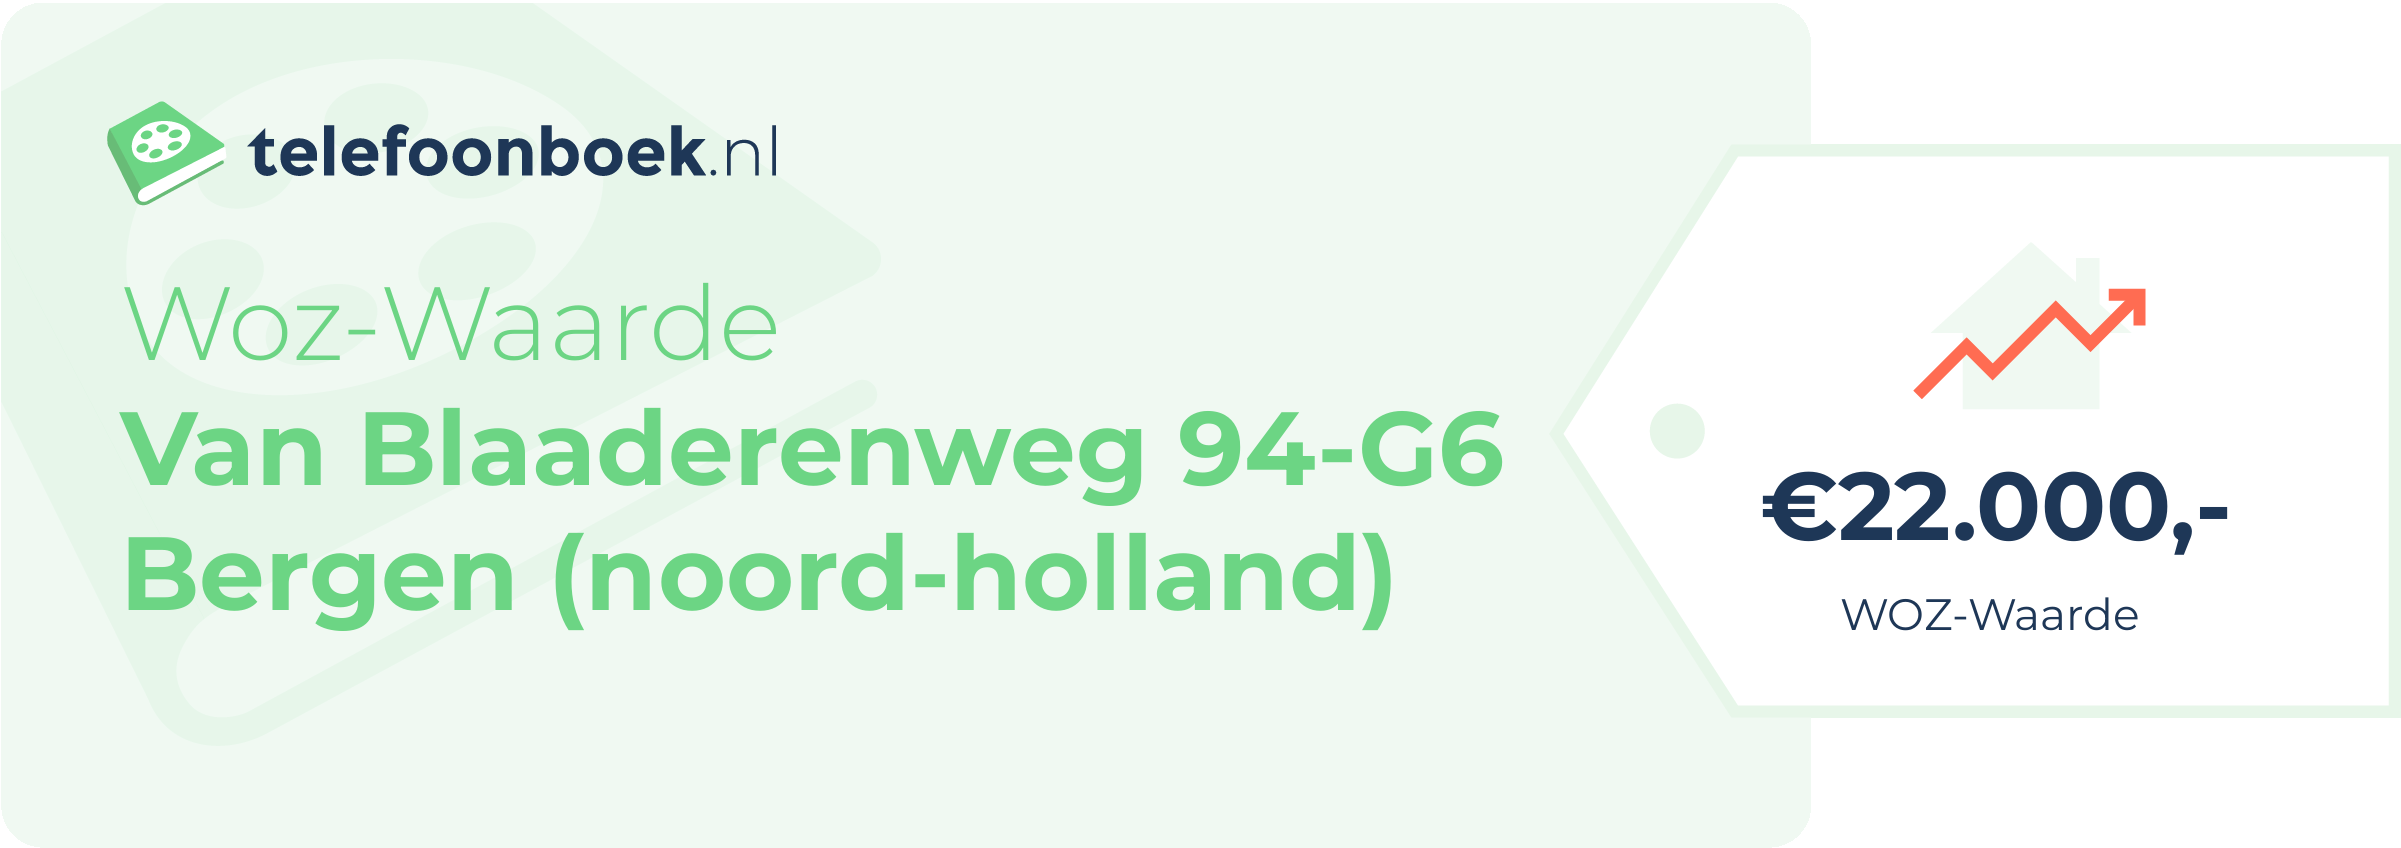 WOZ-waarde Van Blaaderenweg 94-G6 Bergen (Noord-Holland)